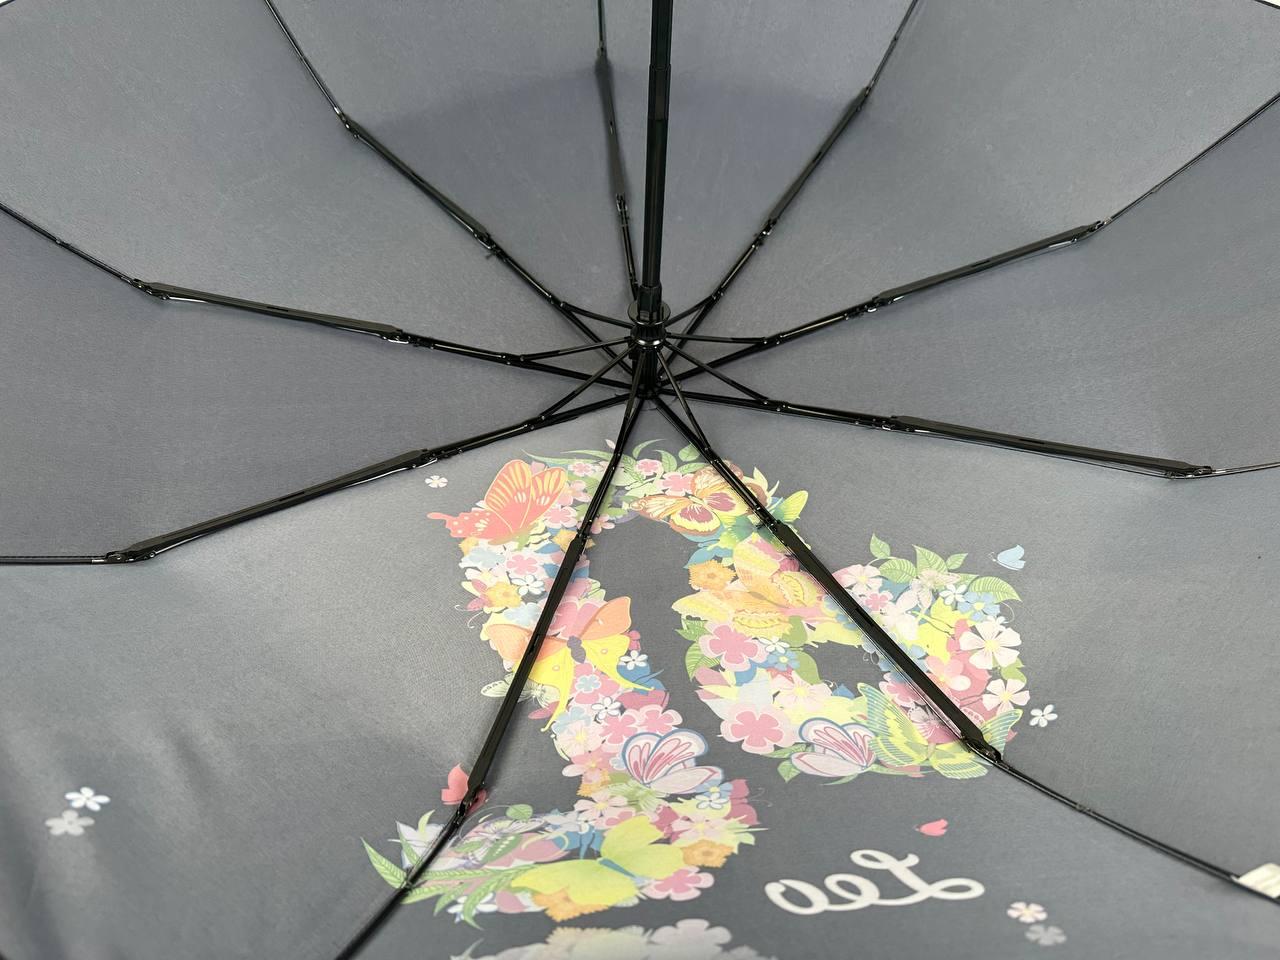 Женский складной зонтик полный автомат Rain 98 см черный - фото 5